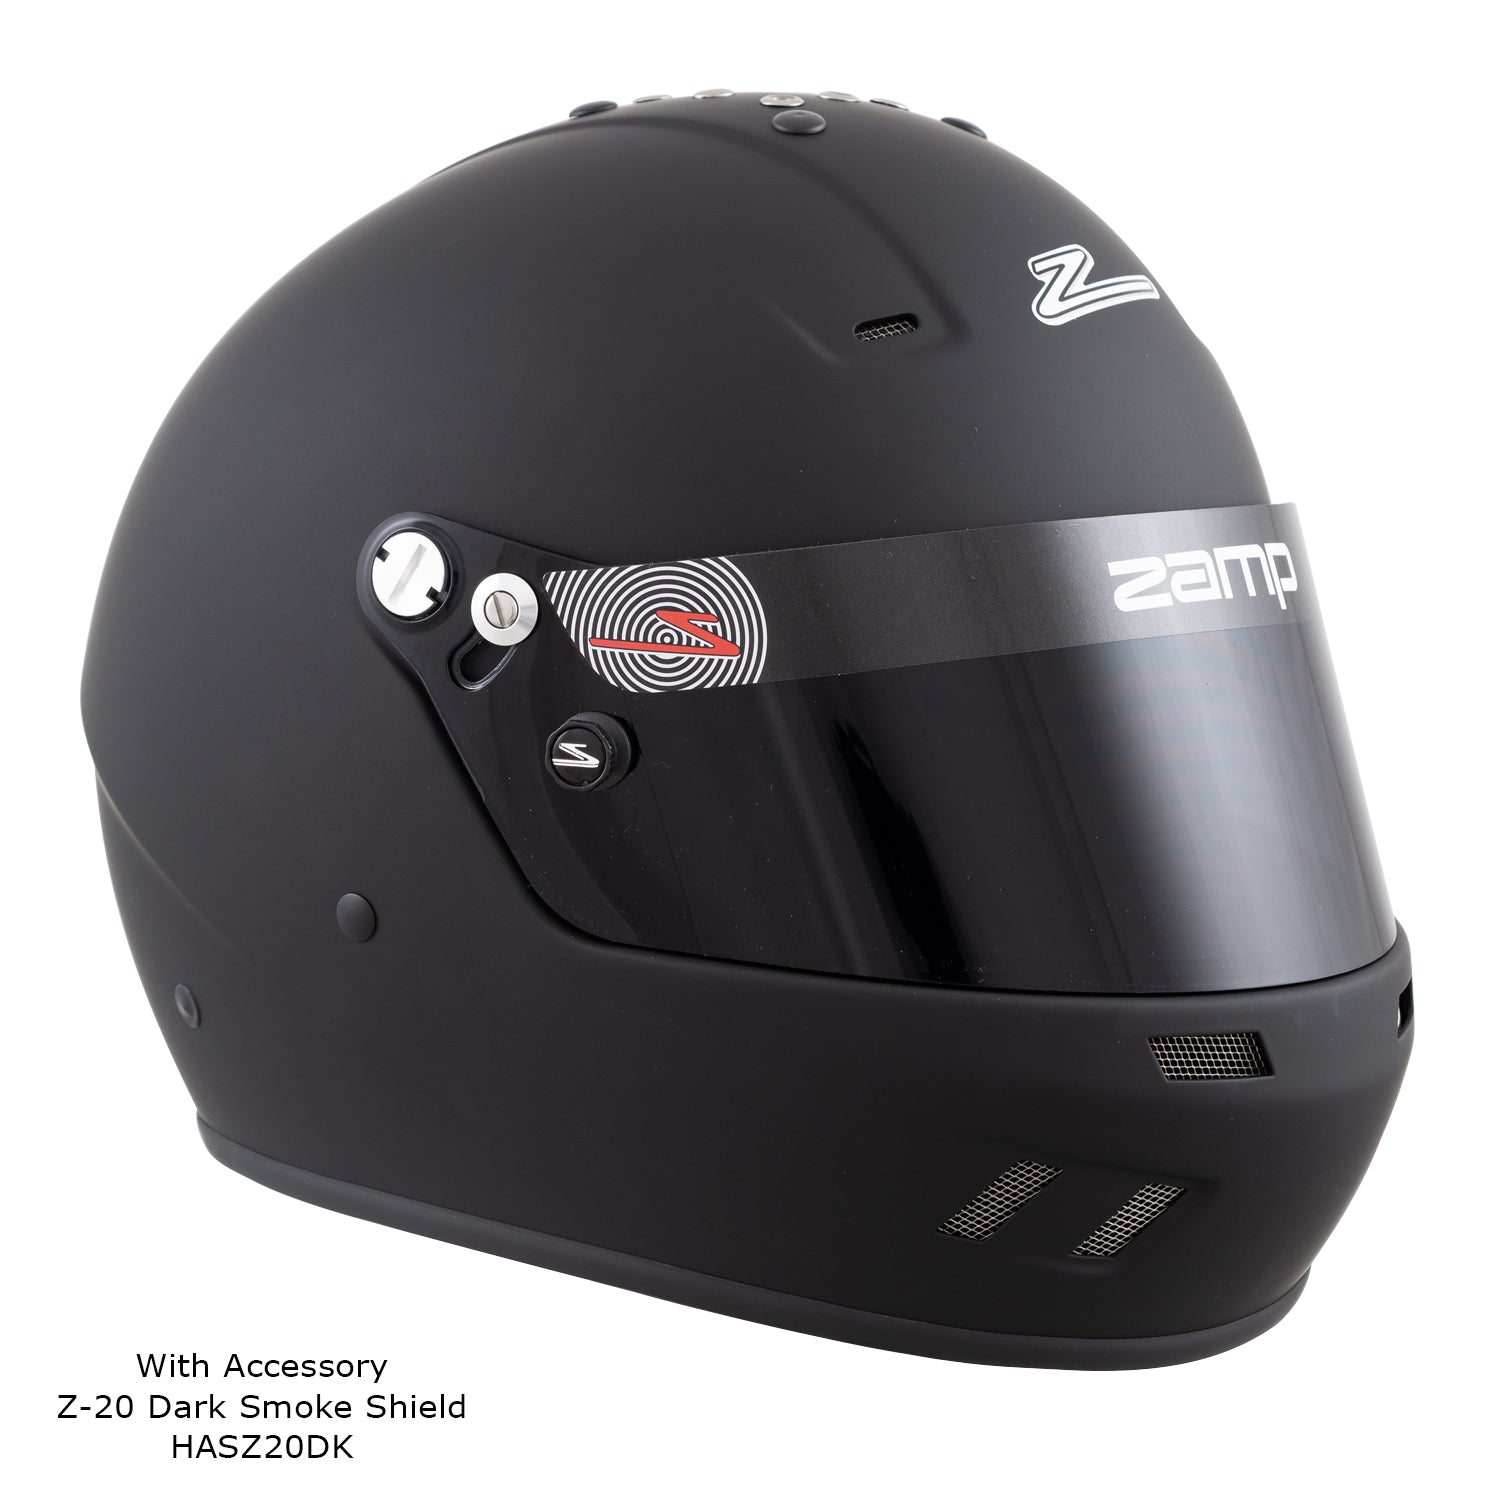 Zamp RZ-59 Helmet, Snell SA-2020